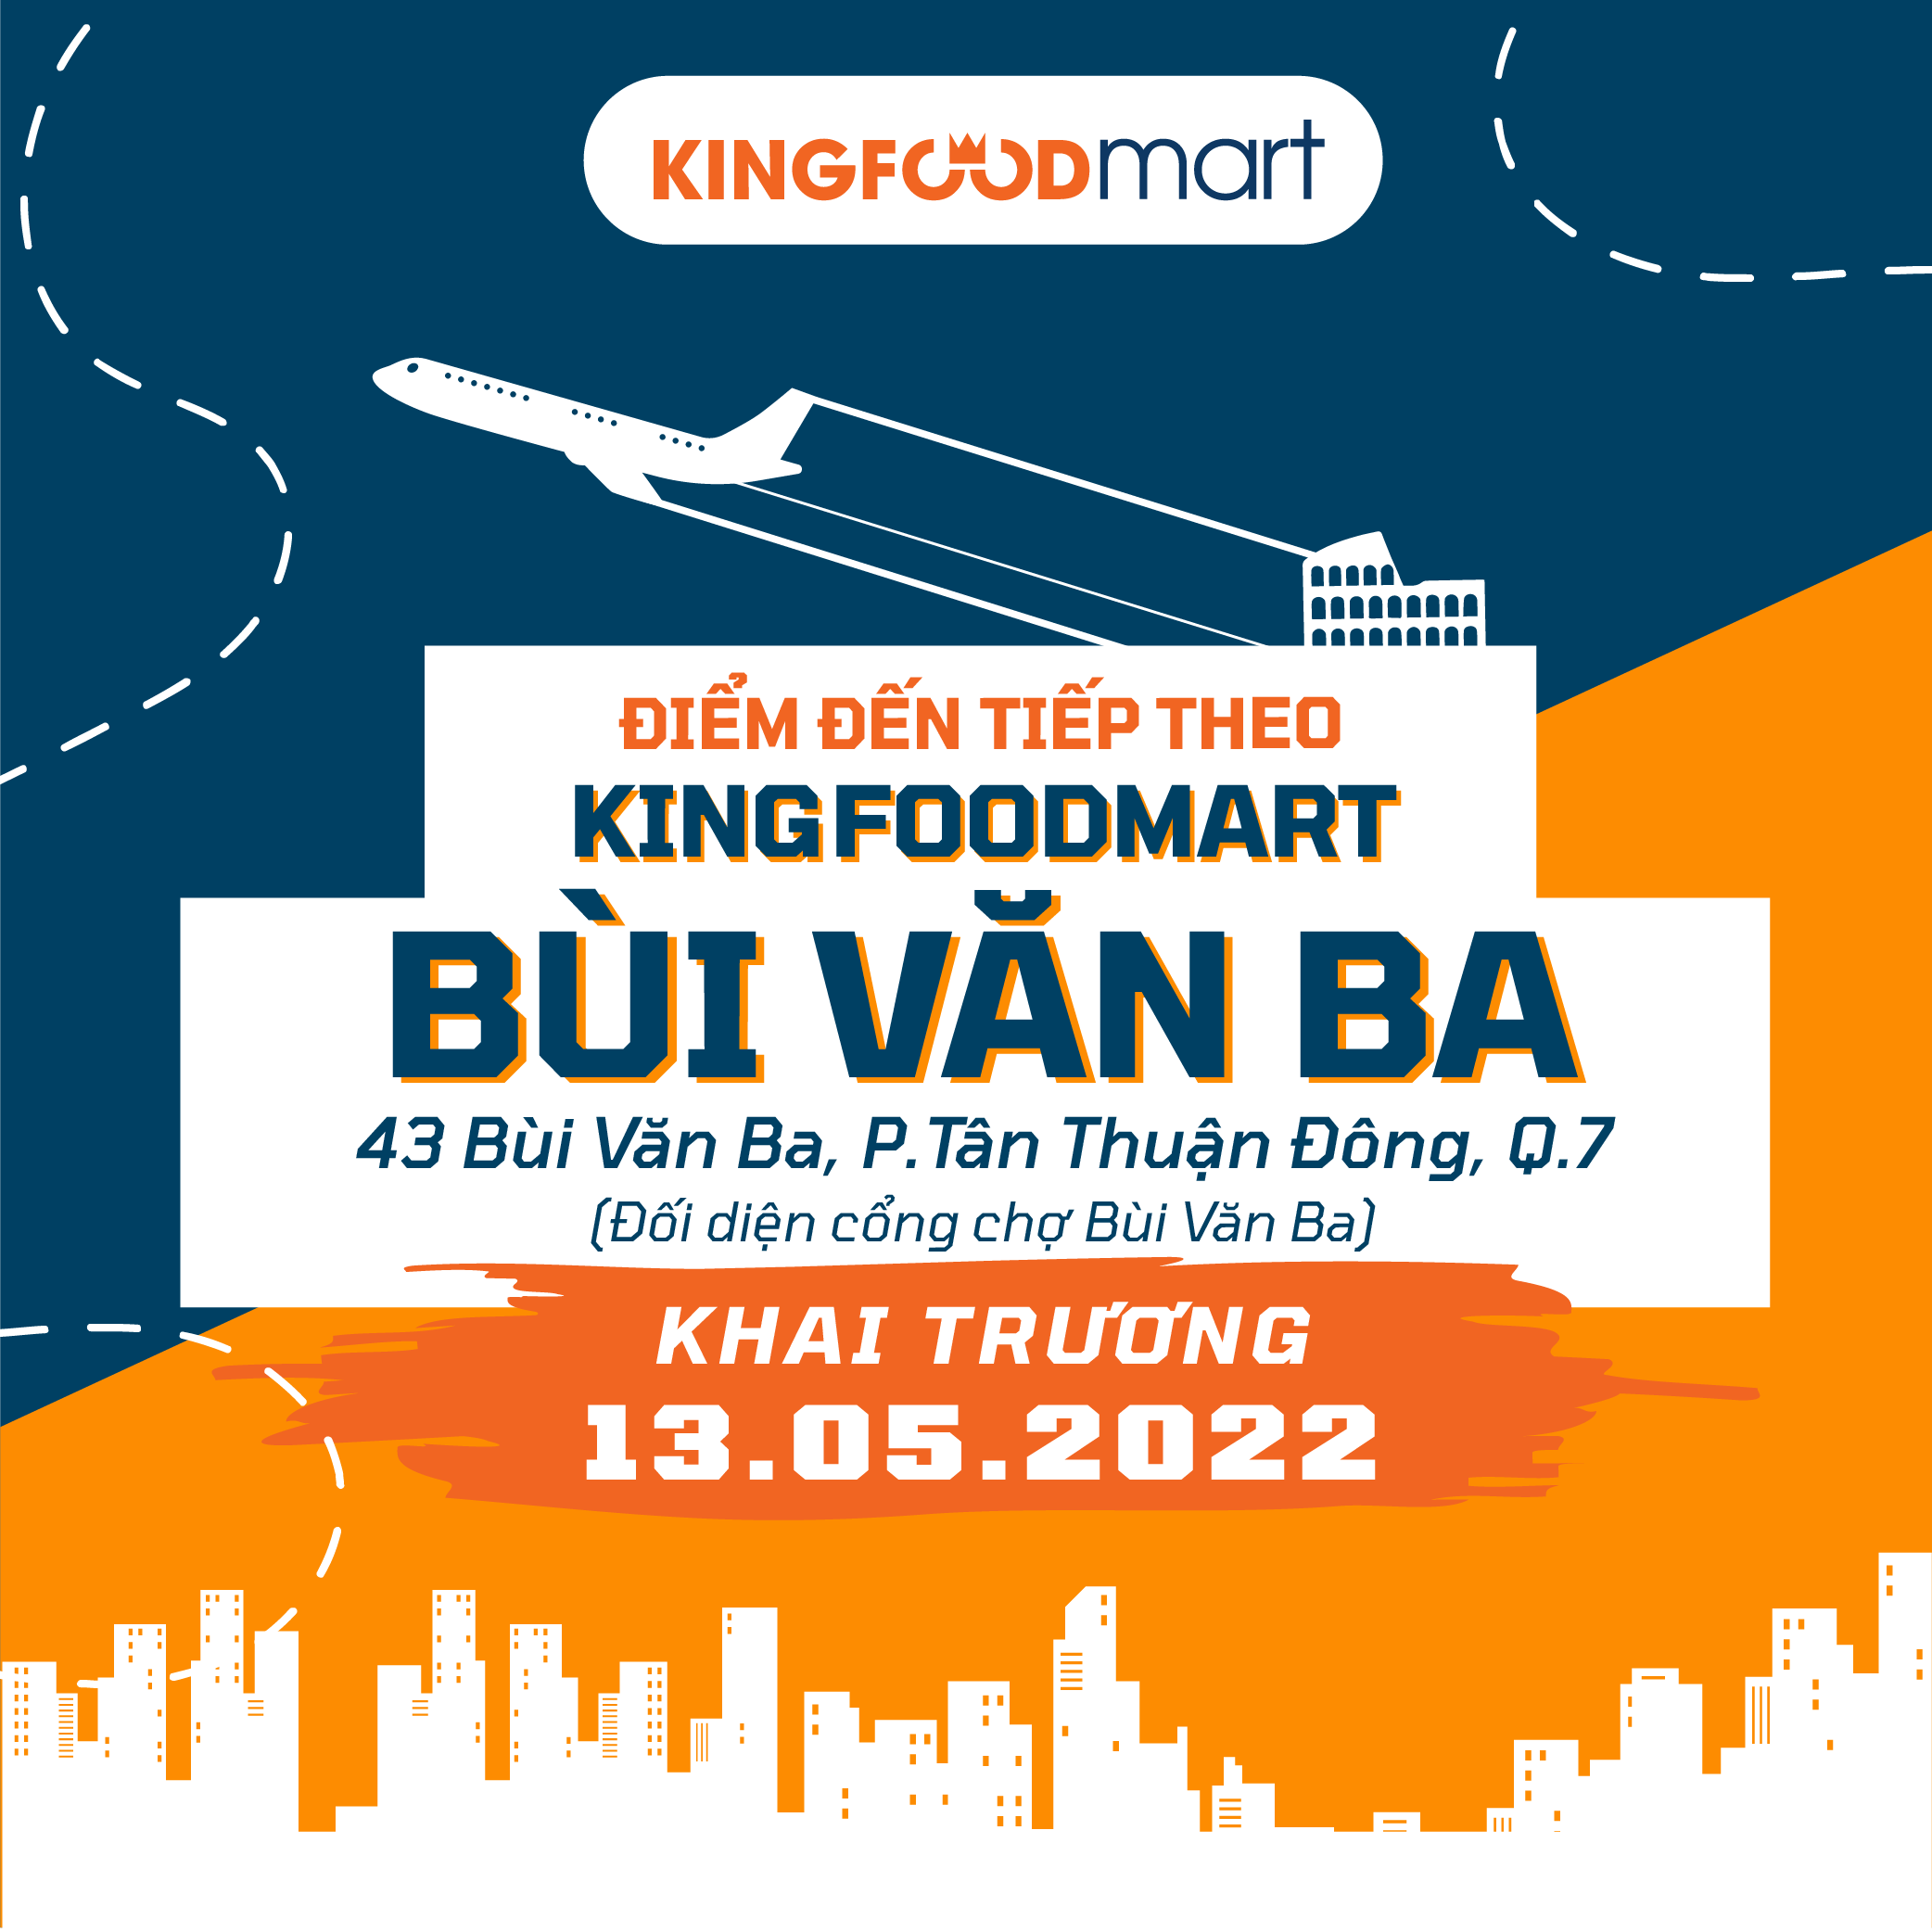 Cửa Hàng Kingfoodmart Thứ 10 Sắp Khai Trương Vào Ngày 13/5/2022!